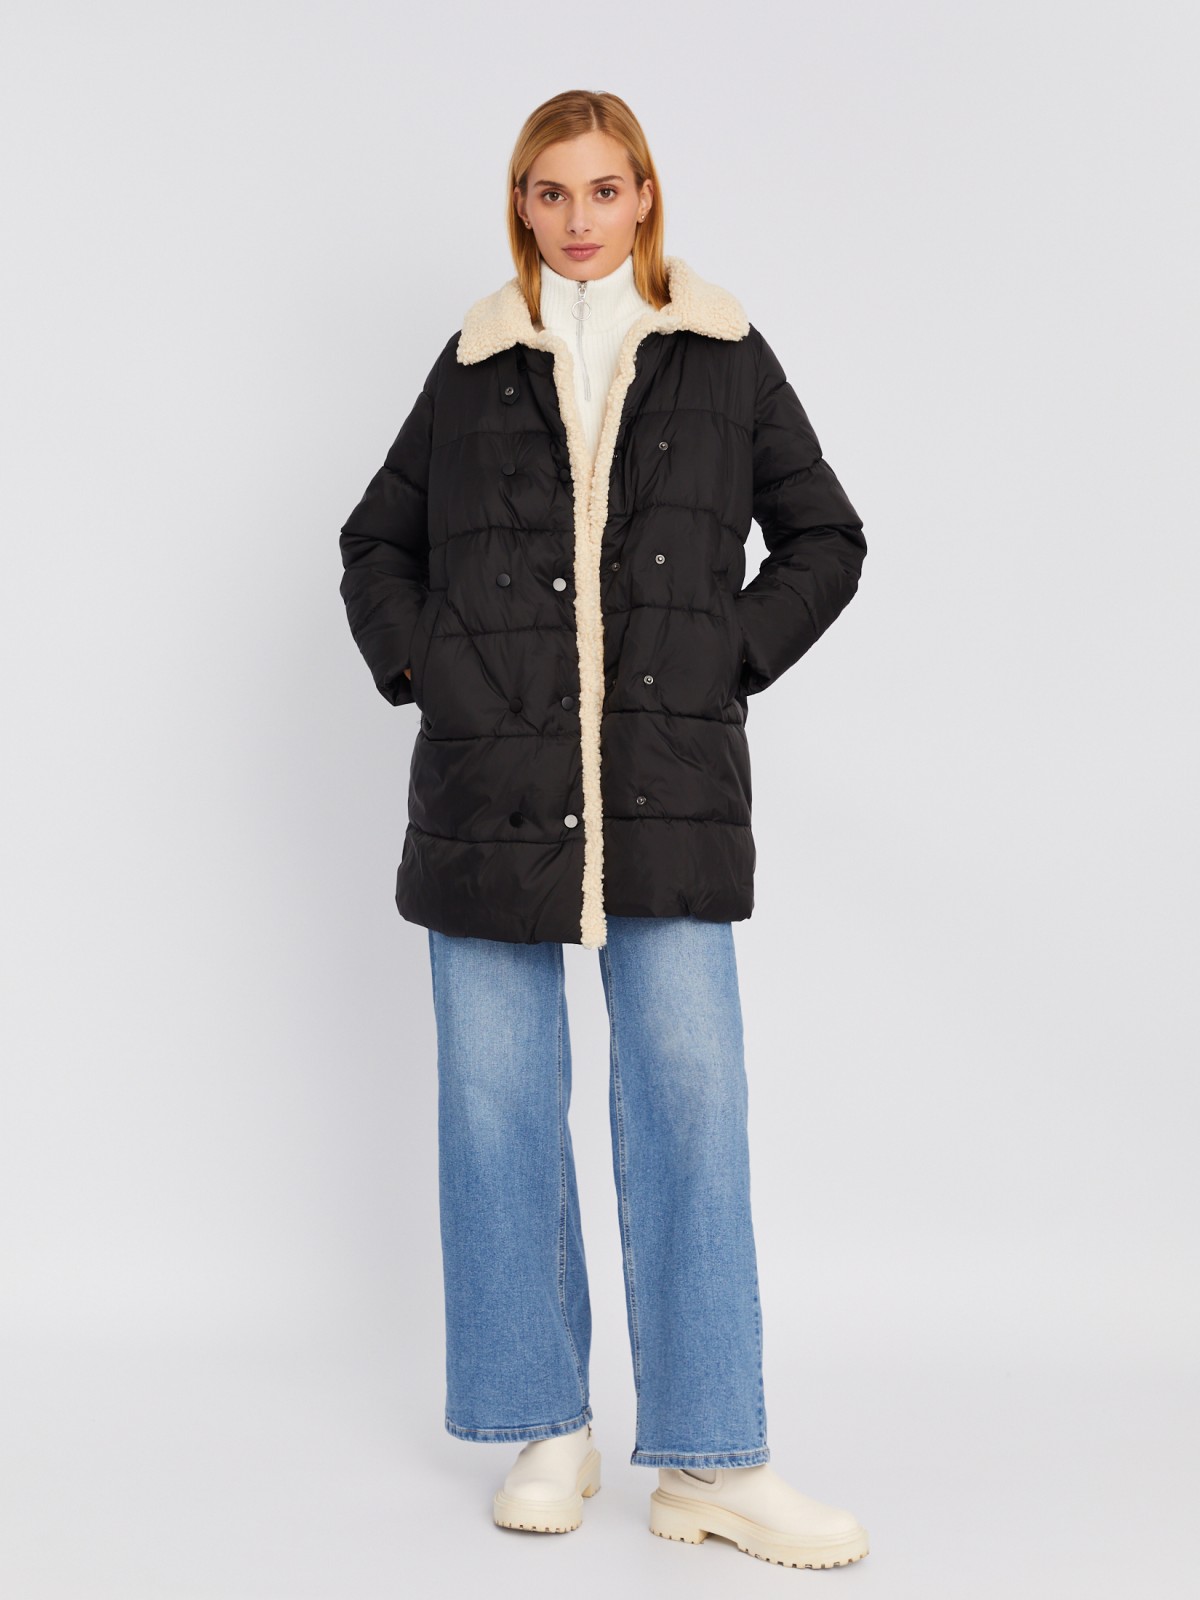 Тёплая стёганая куртка-пальто с отложным воротником и отделкой из искусственного меха zolla 023335239014, цвет черный, размер XS - фото 2